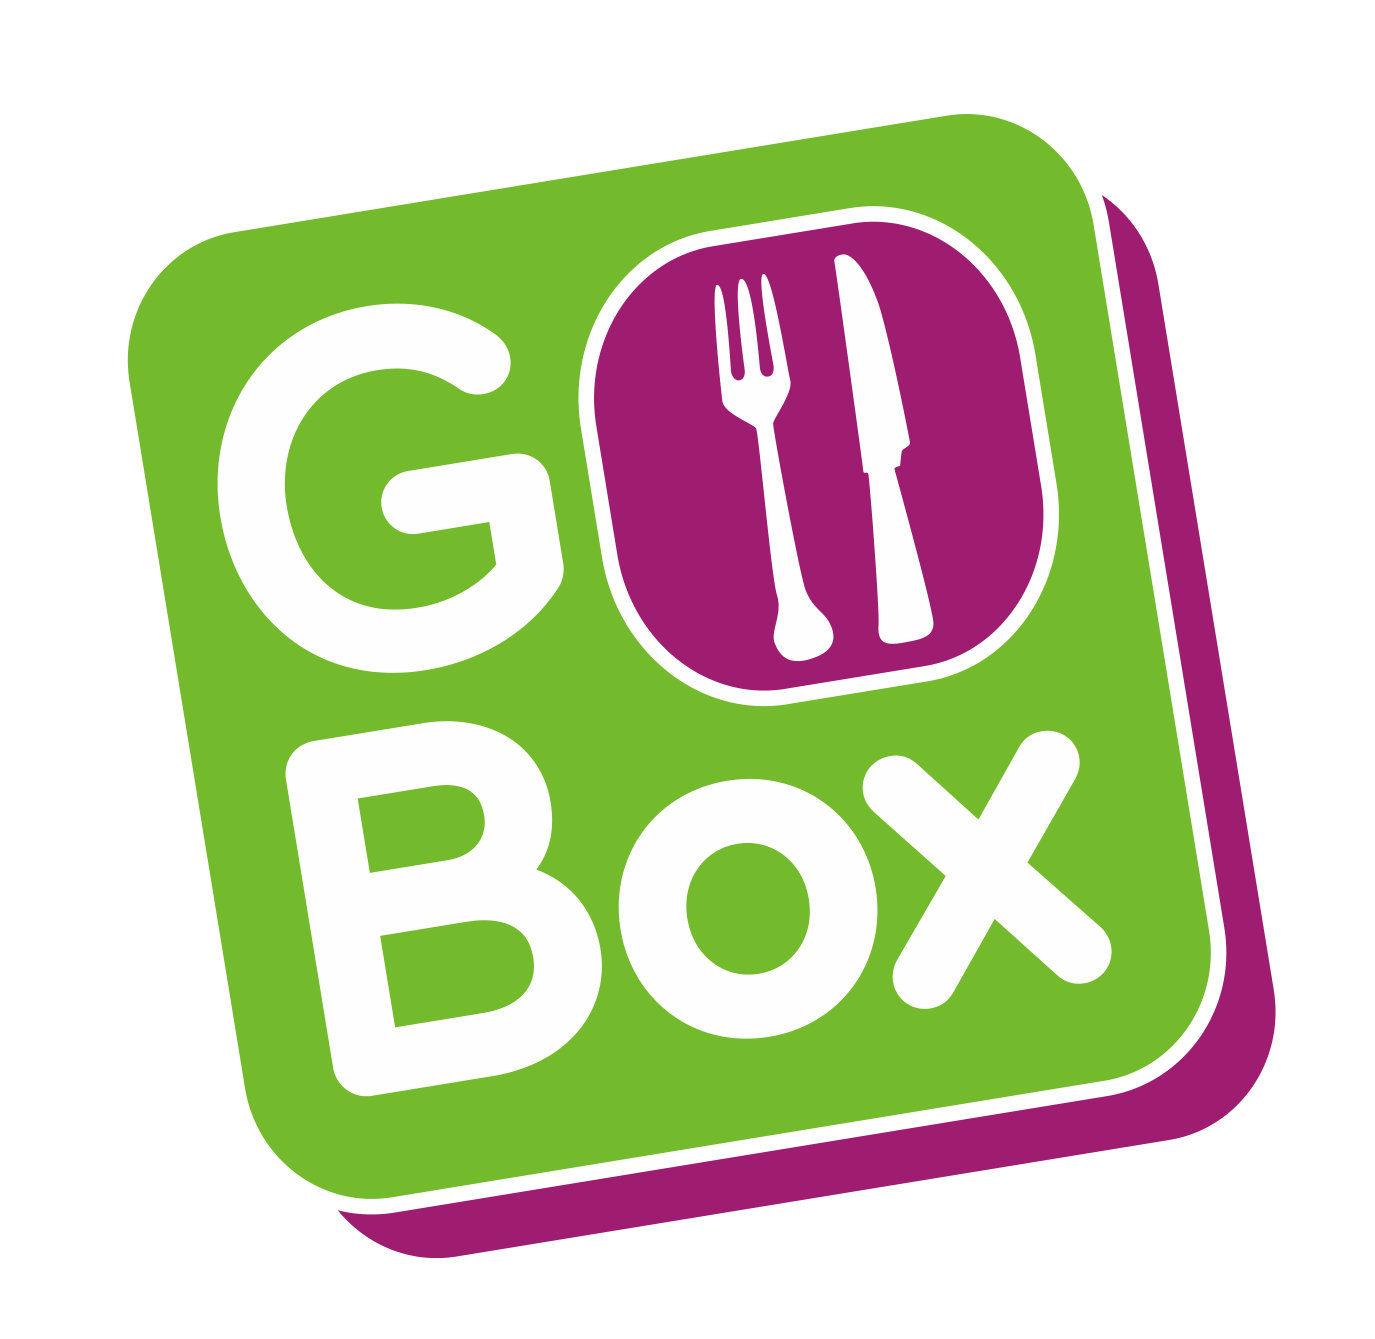 BX Ox Logo - Home - GO Box